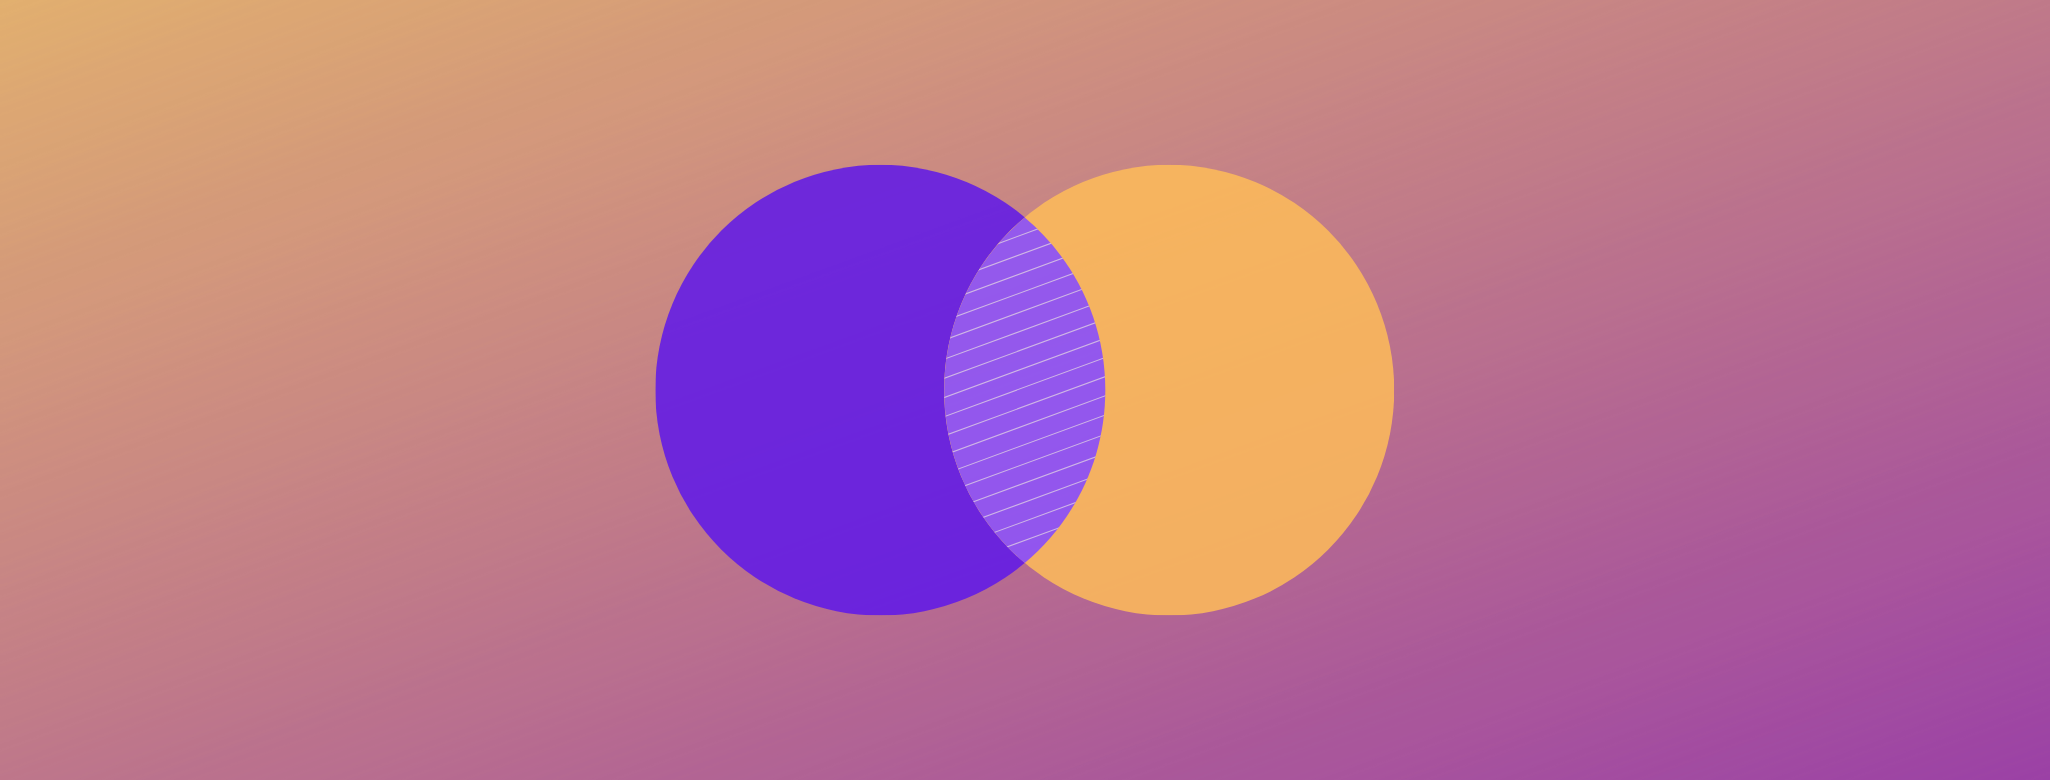 Ilustração de dois círculos coloridos com hachura na área de intersecção entre eles.